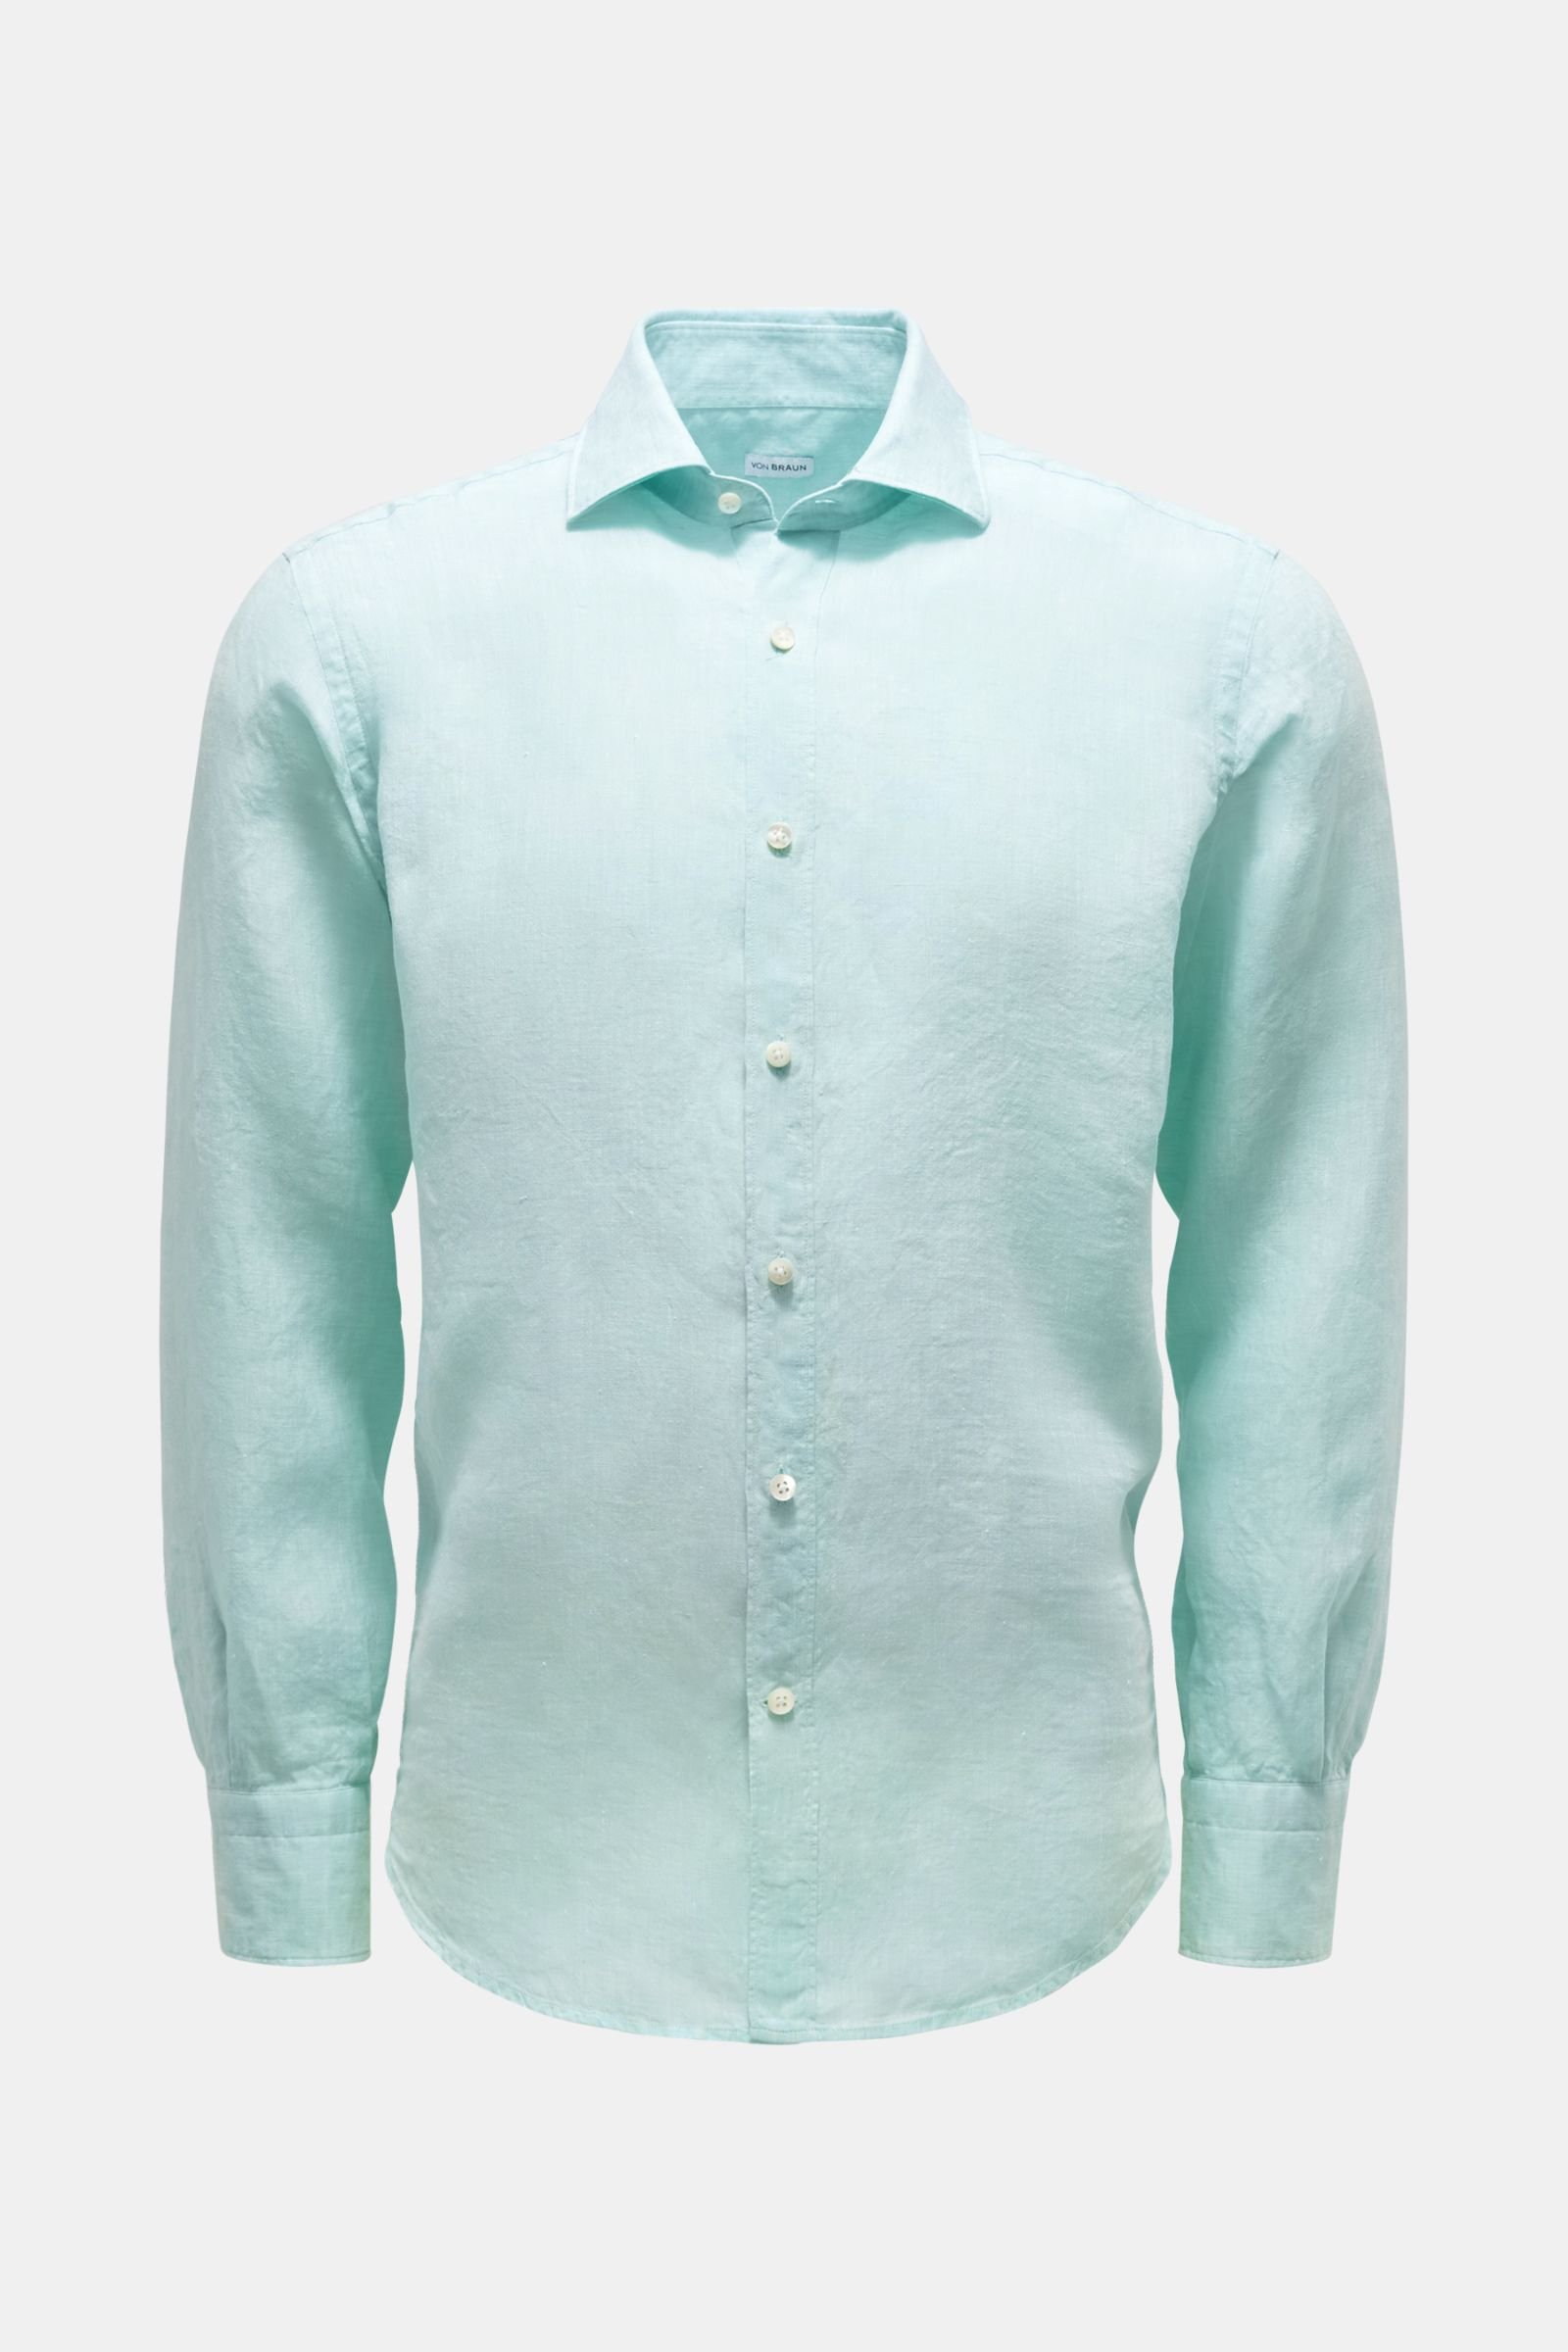 Linen shirt Kent collar mint green